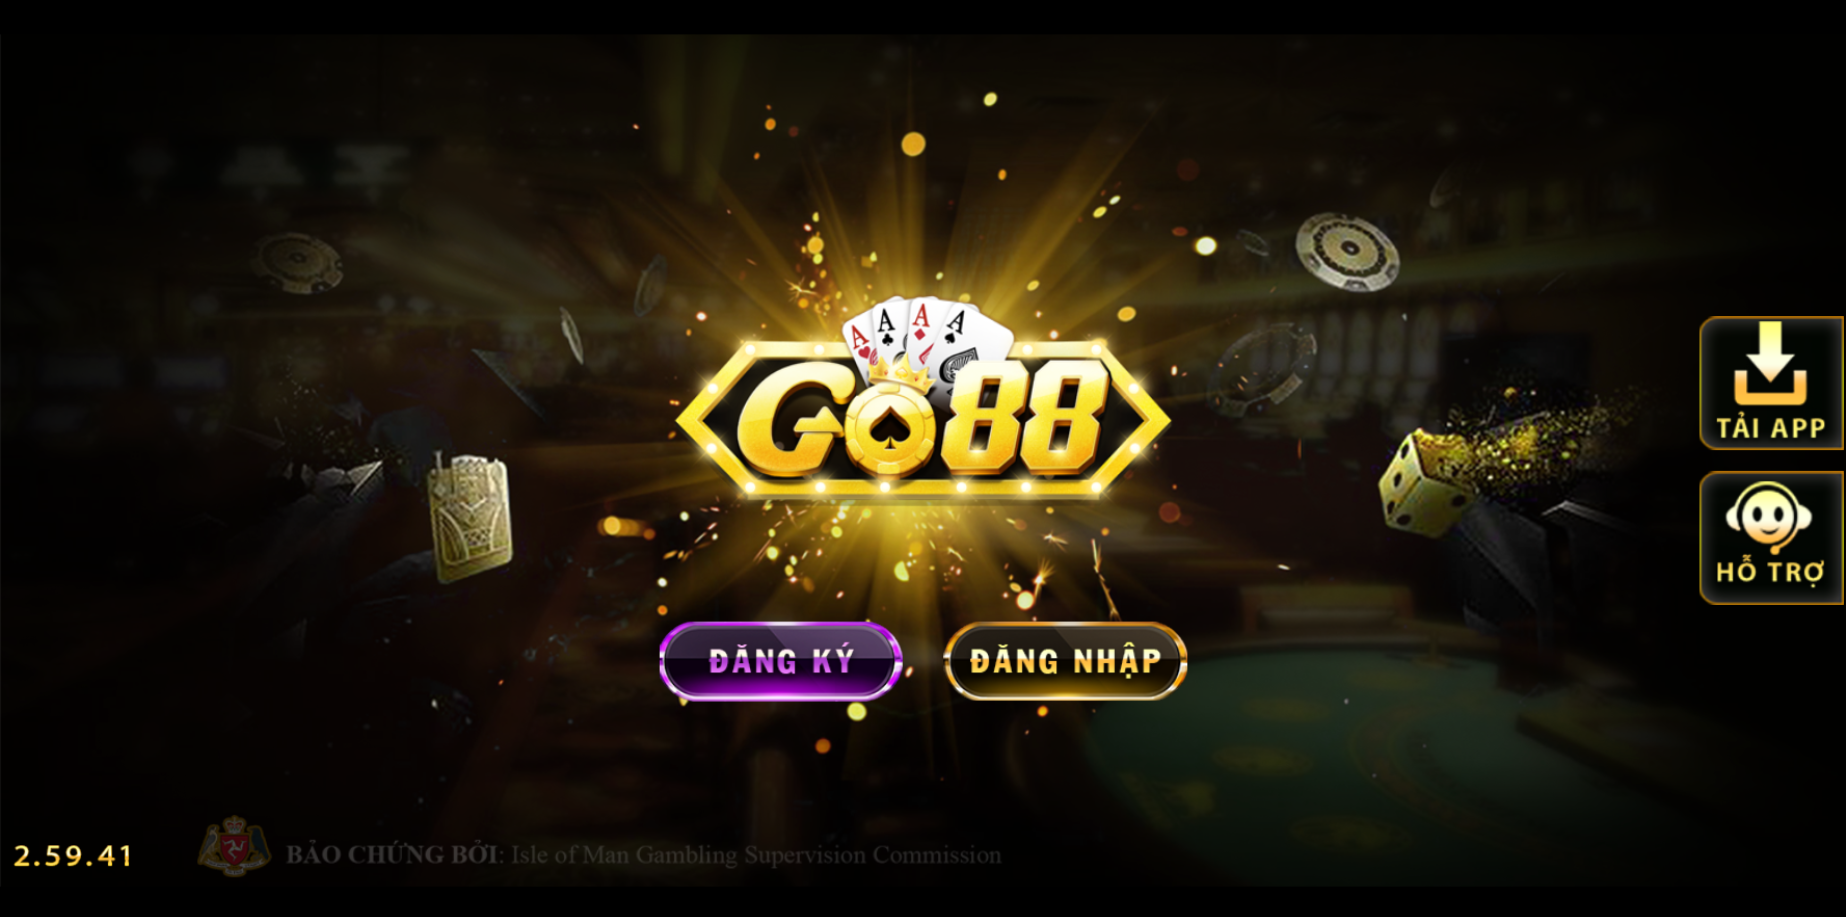 GO88 - Thiên Đường Game Bài Đổi Thưởng - Tải Go88 +100K